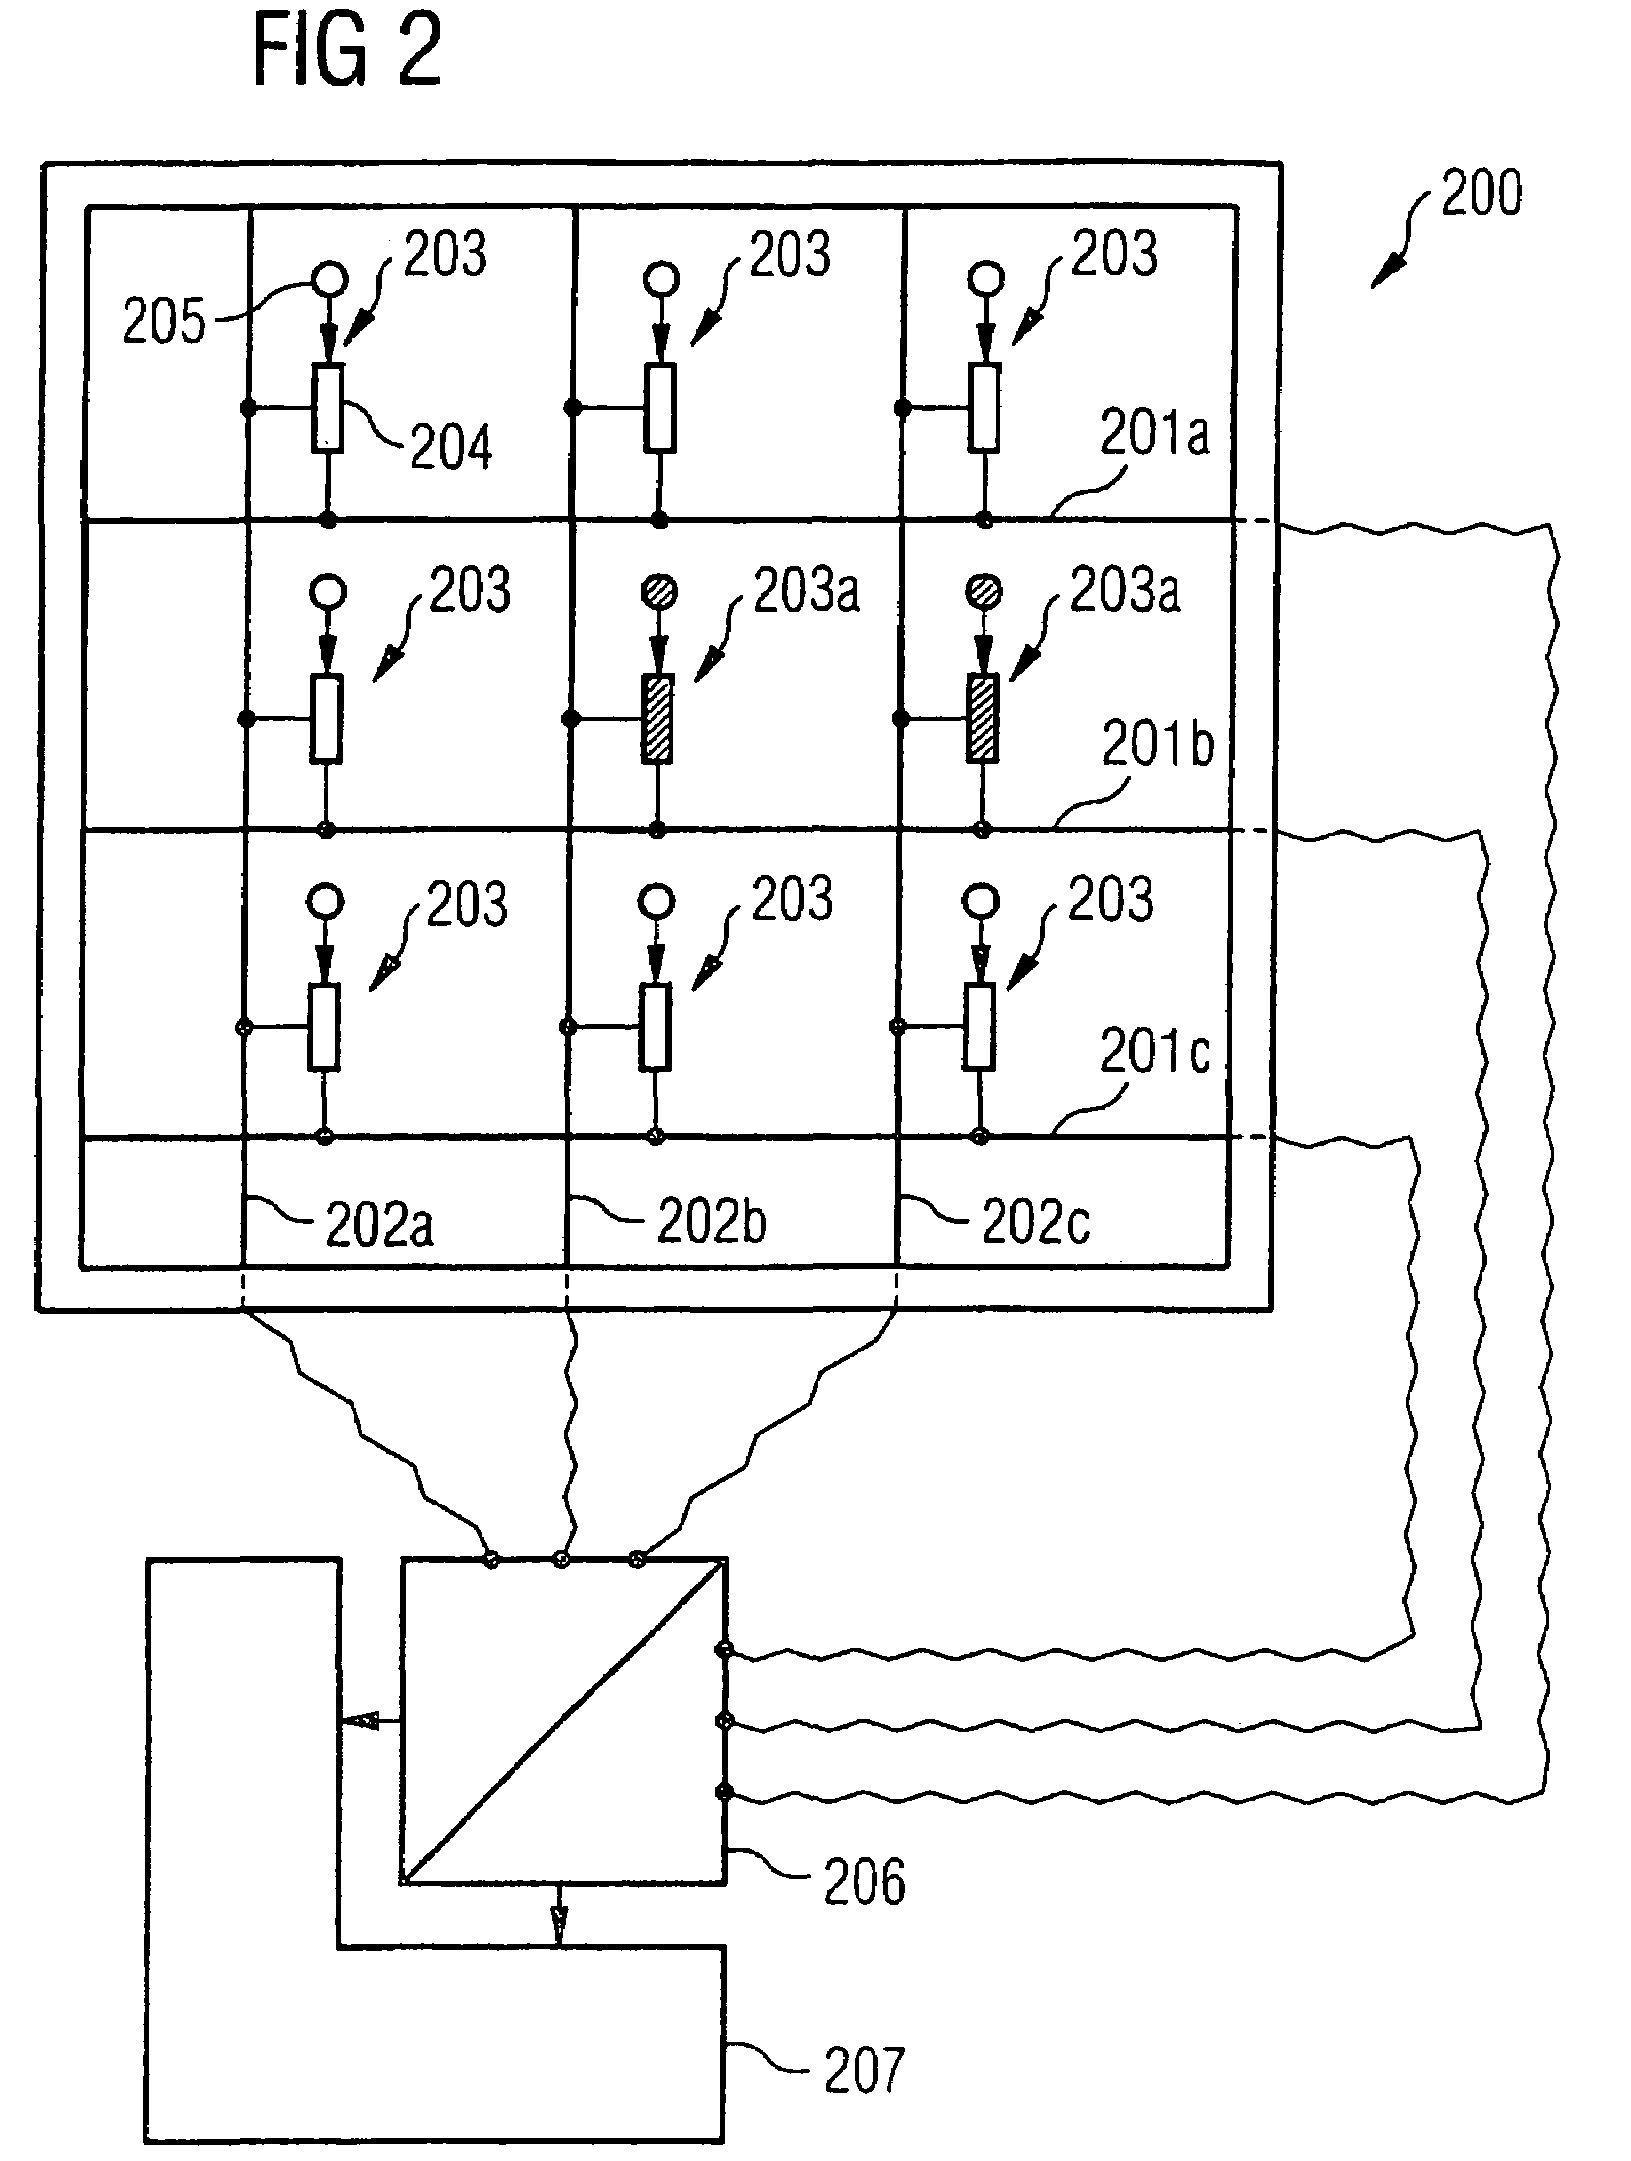 Sensor arrangement